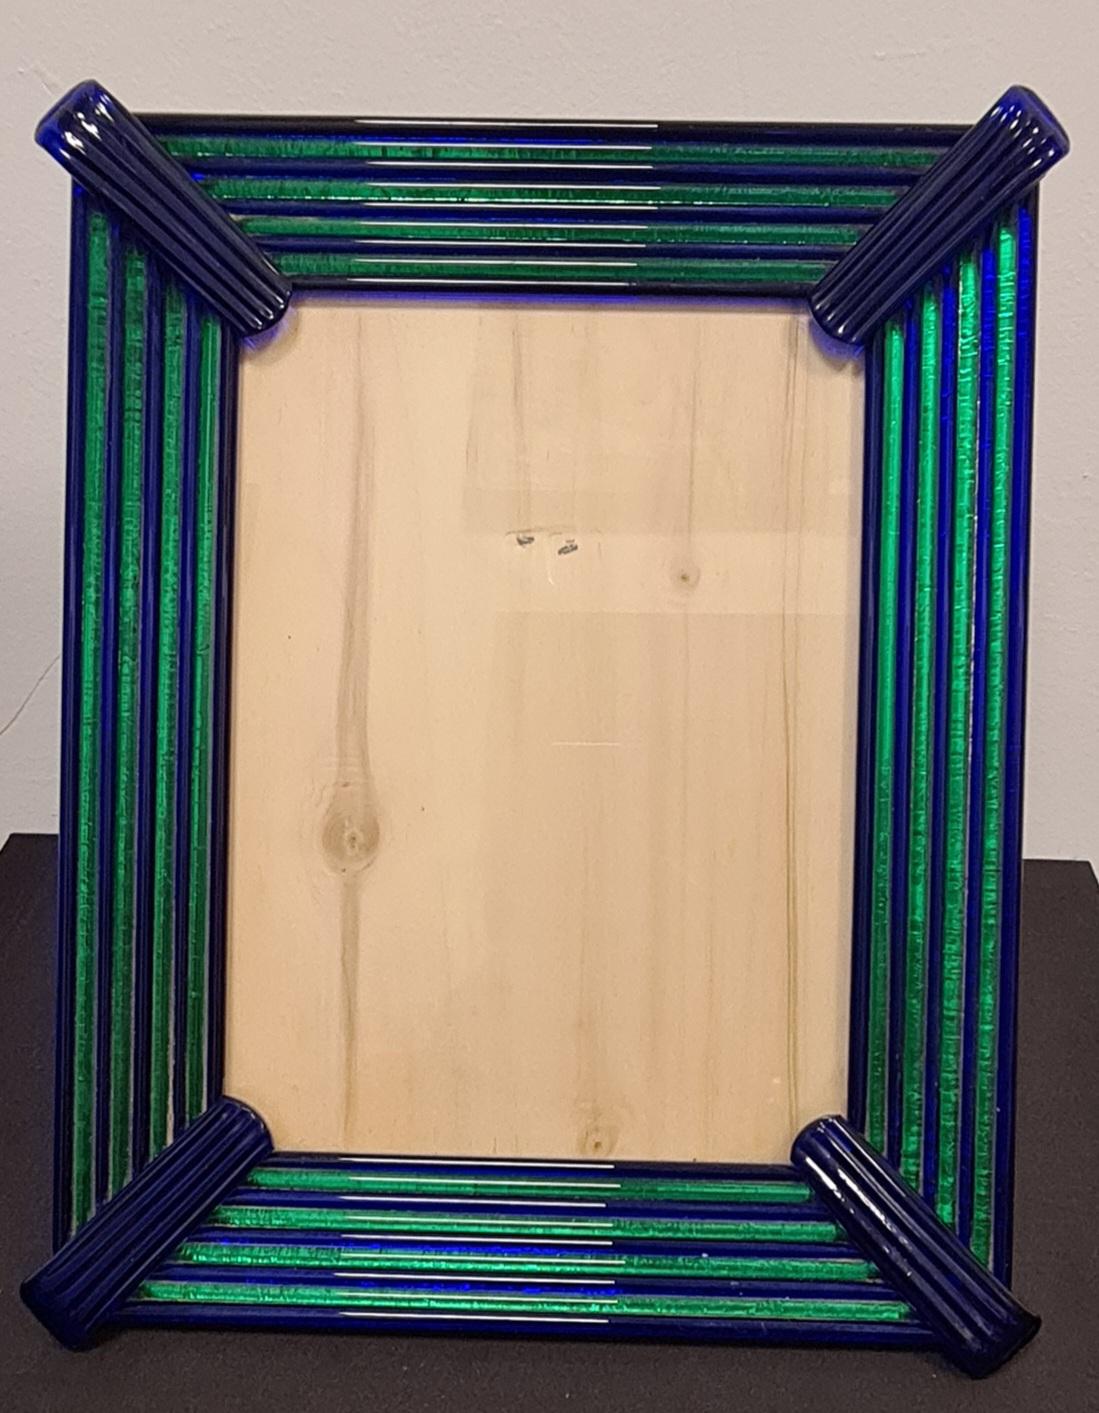 Cadre en verre raffiné attribuable au maître verrier Archimede Seguso.

Le chronice est composé de baguettes de verre de Murano alternativement bleues et vertes.

Les tiges de verre sont placées sur un support en bois laqué.

Archimede Seguso fut